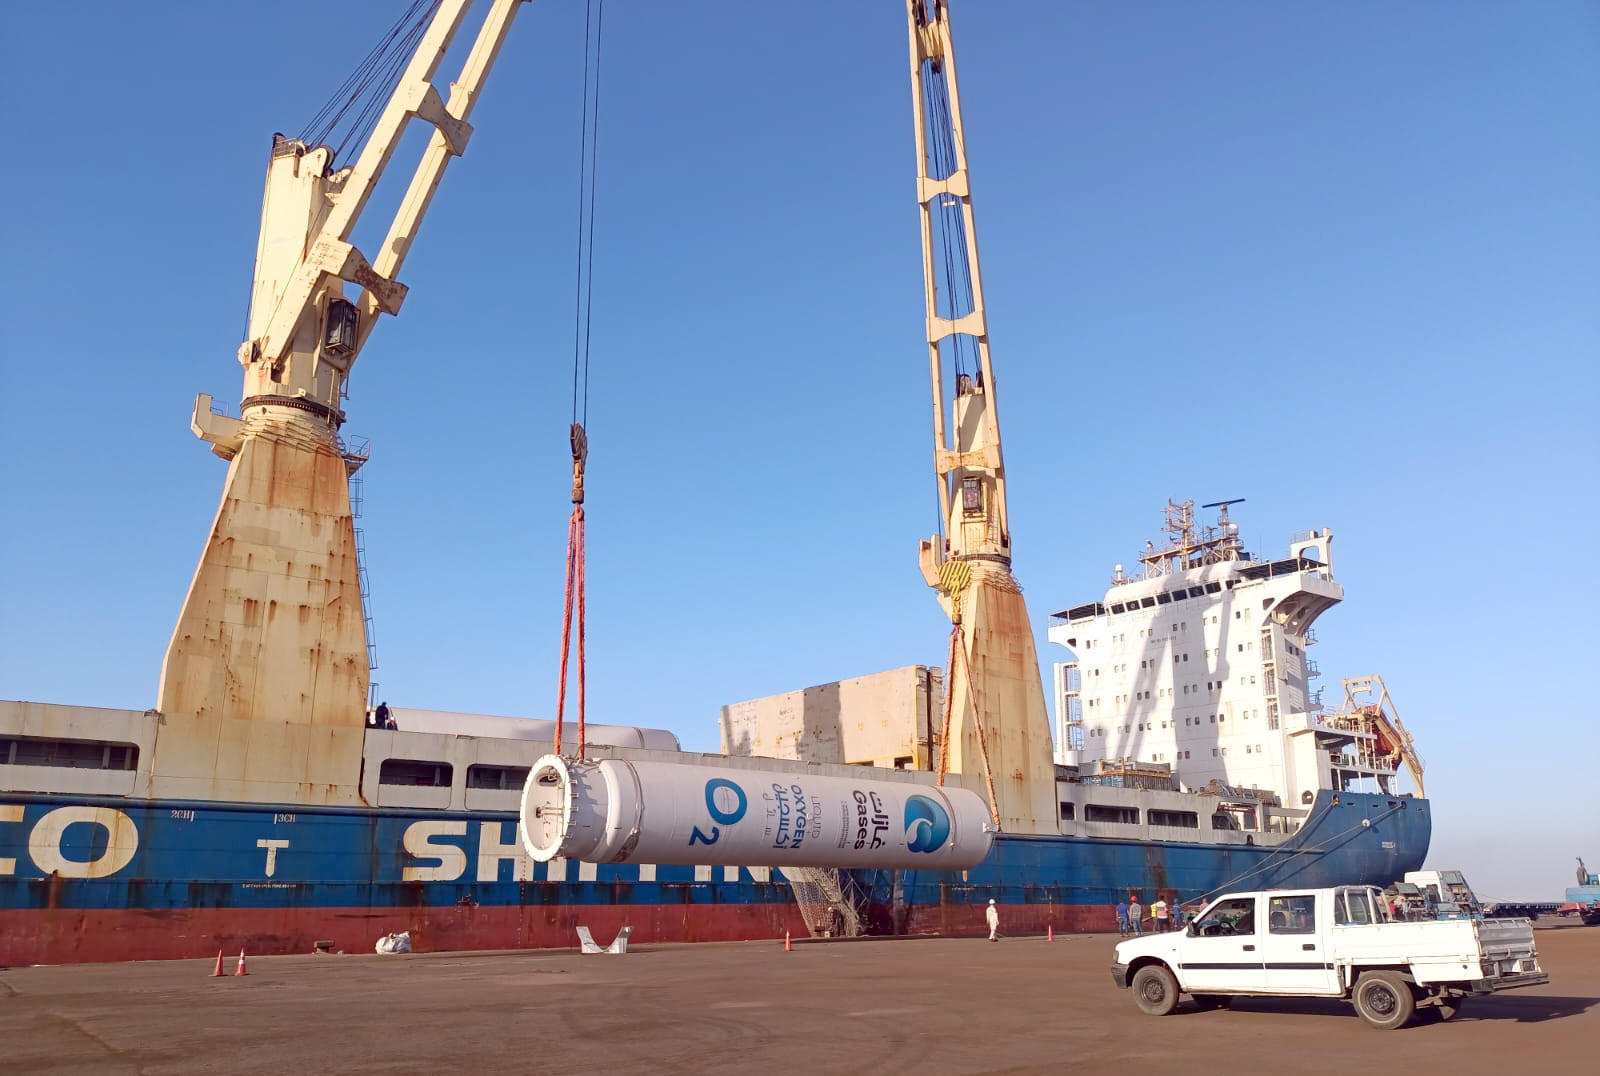 بوزن 2927 طن.. ميناء الأدبية يستقبل سفينة مهيئات على متنها معدات حيوية لصناعة الأدوية